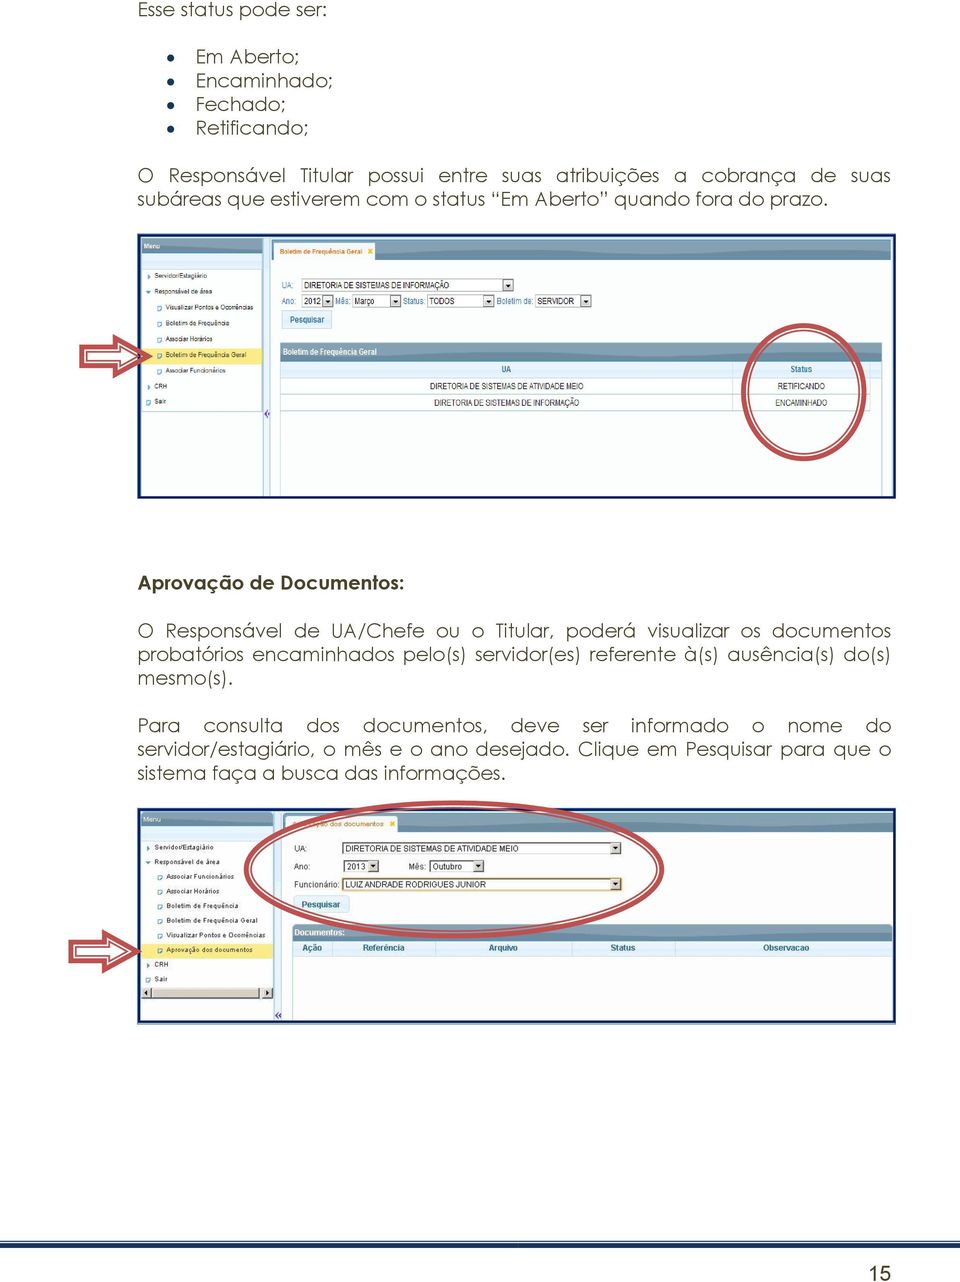 Aprovação de Documentos: O Responsável de UA/Chefe ou o Titular, poderá visualizar os documentos probatórios encaminhados pelo(s)